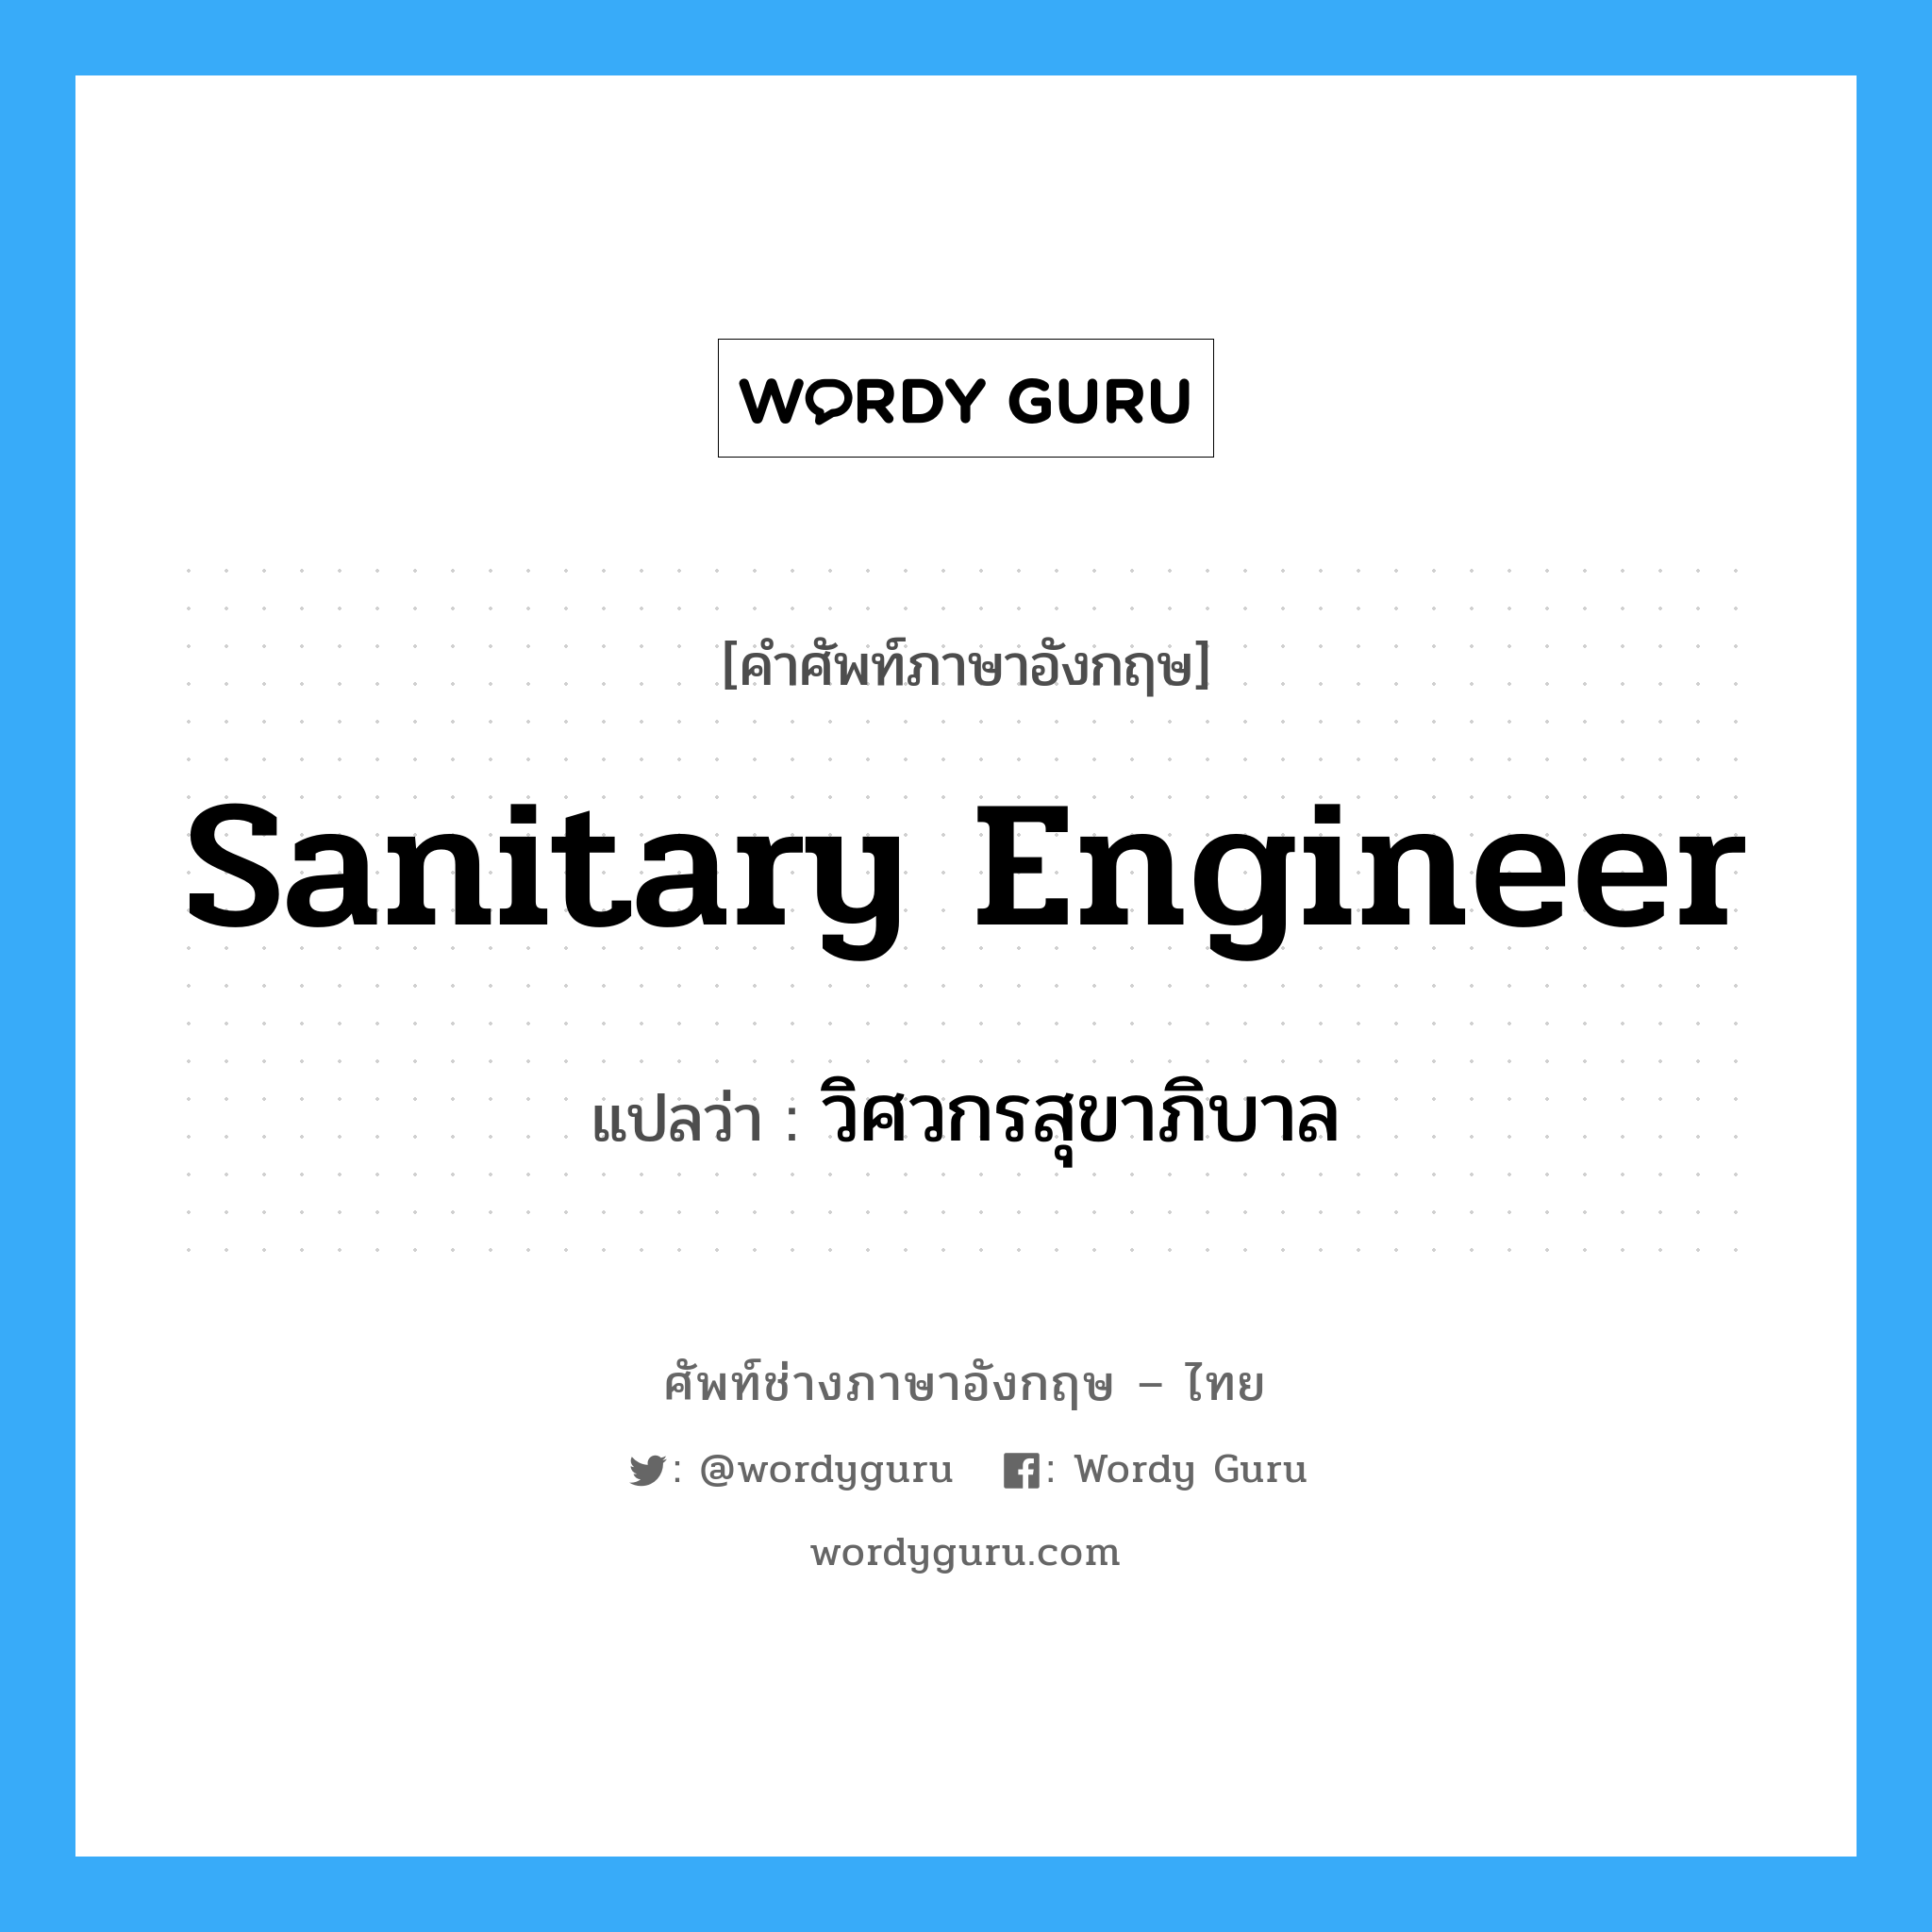 วิศวกรสุขาภิบาล ภาษาอังกฤษ?, คำศัพท์ช่างภาษาอังกฤษ - ไทย วิศวกรสุขาภิบาล คำศัพท์ภาษาอังกฤษ วิศวกรสุขาภิบาล แปลว่า sanitary engineer